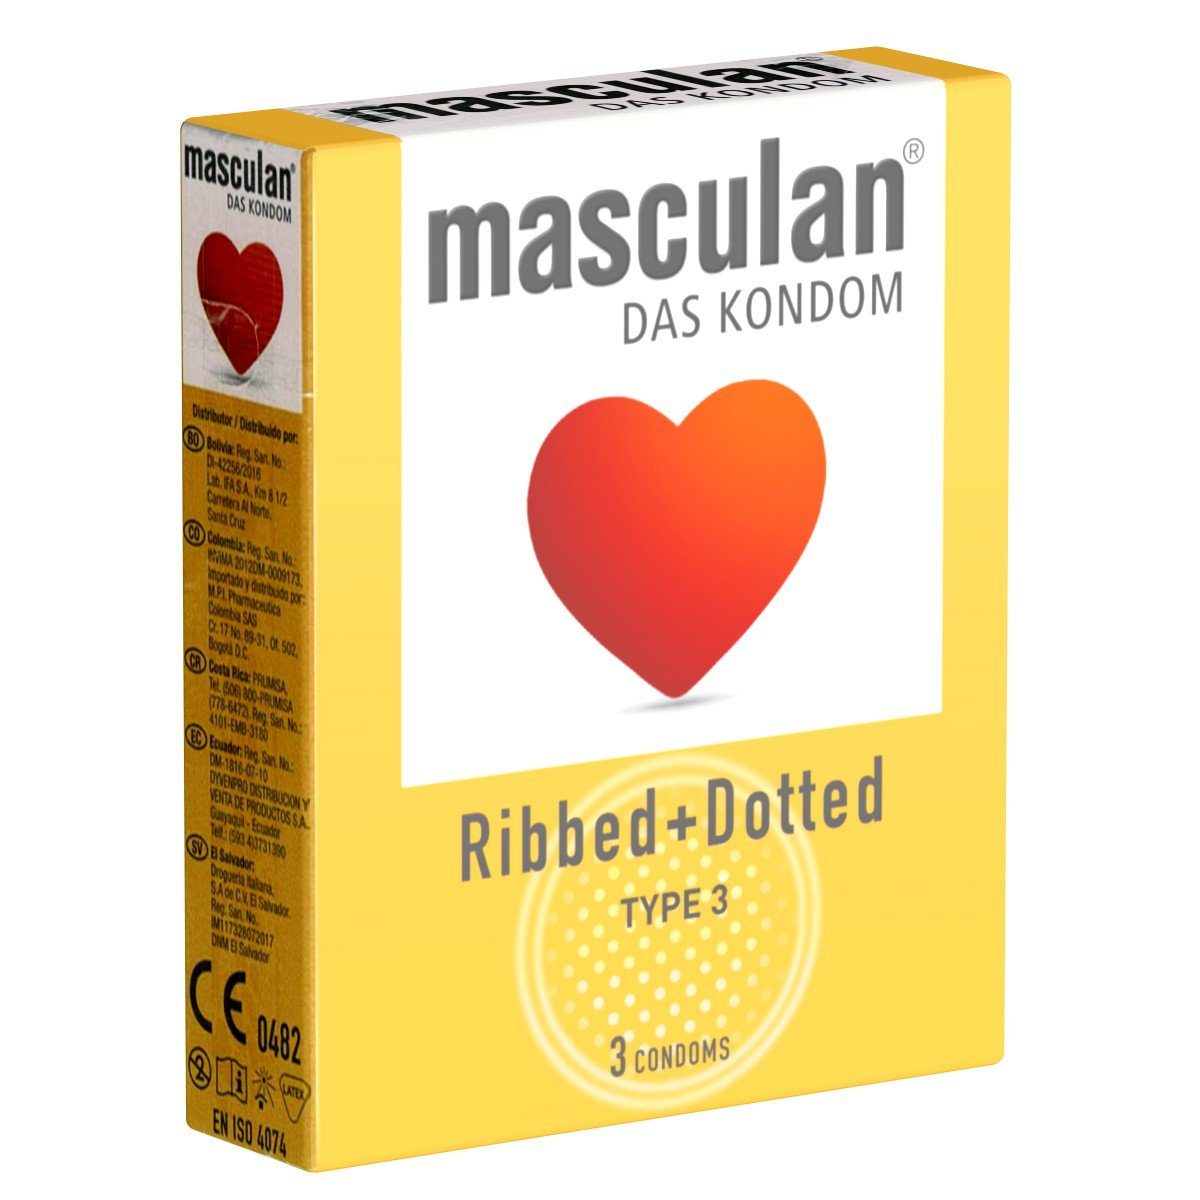 Masculan Kondome Typ 3 (ribbed/dotted) Packung mit, 3 St., gerippt-genoppte Kondome für mehr Gefühl